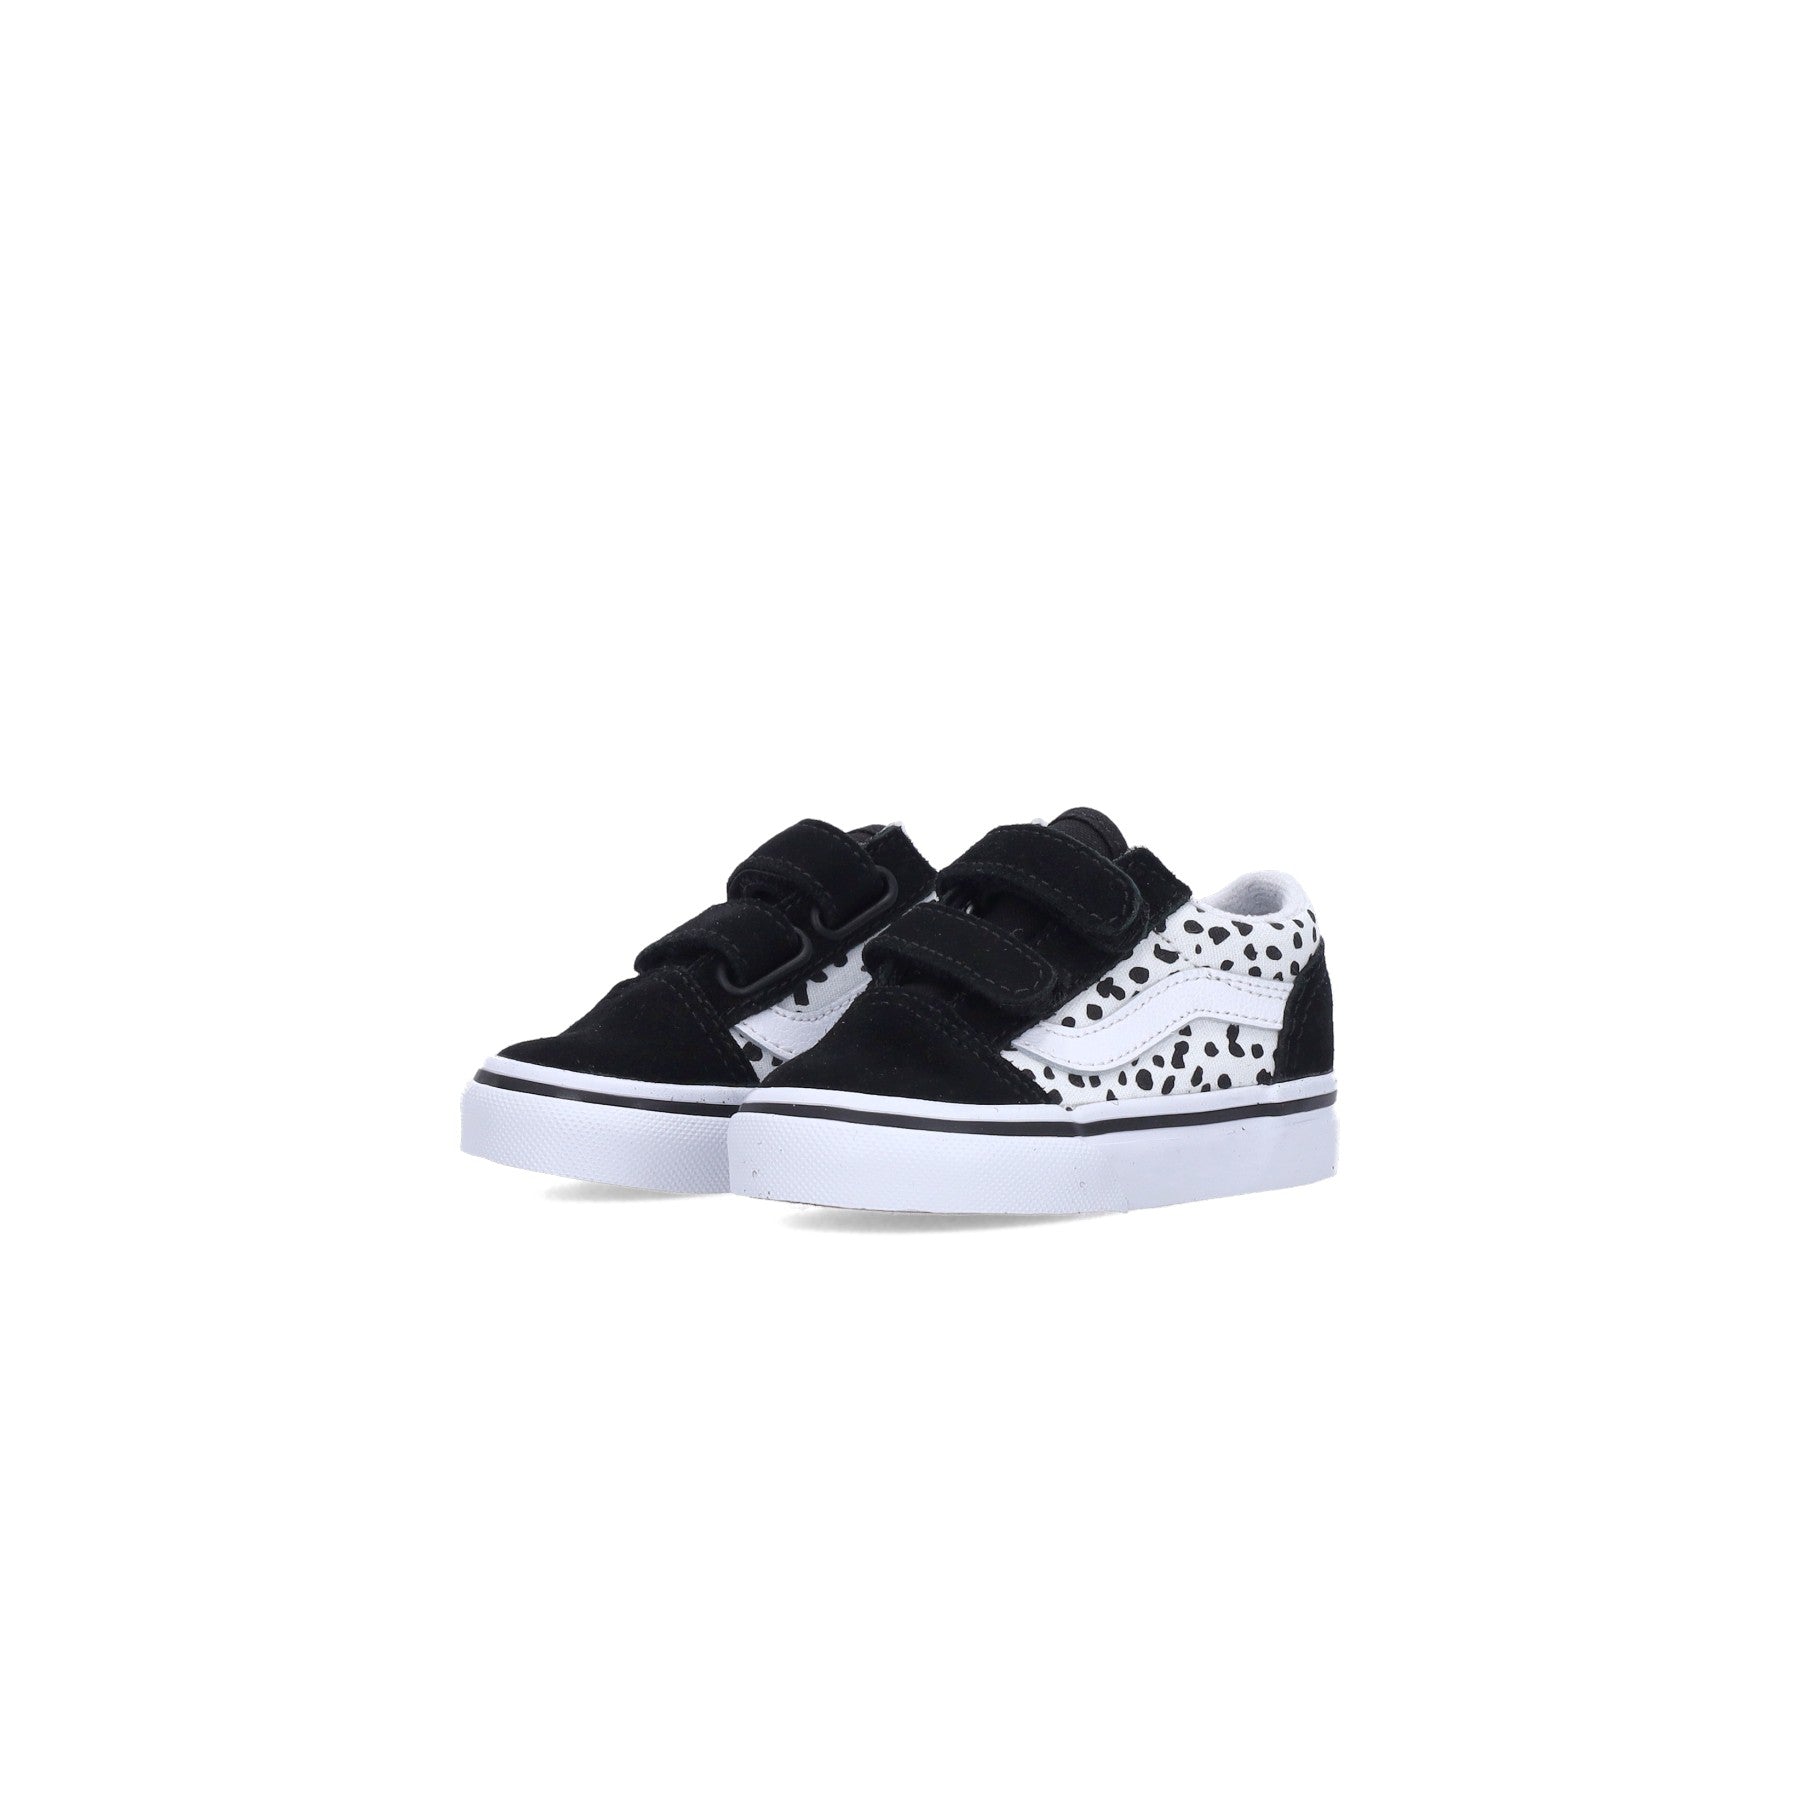 Low Shoe Girl Old Skool V (dalmatian) Black/true White